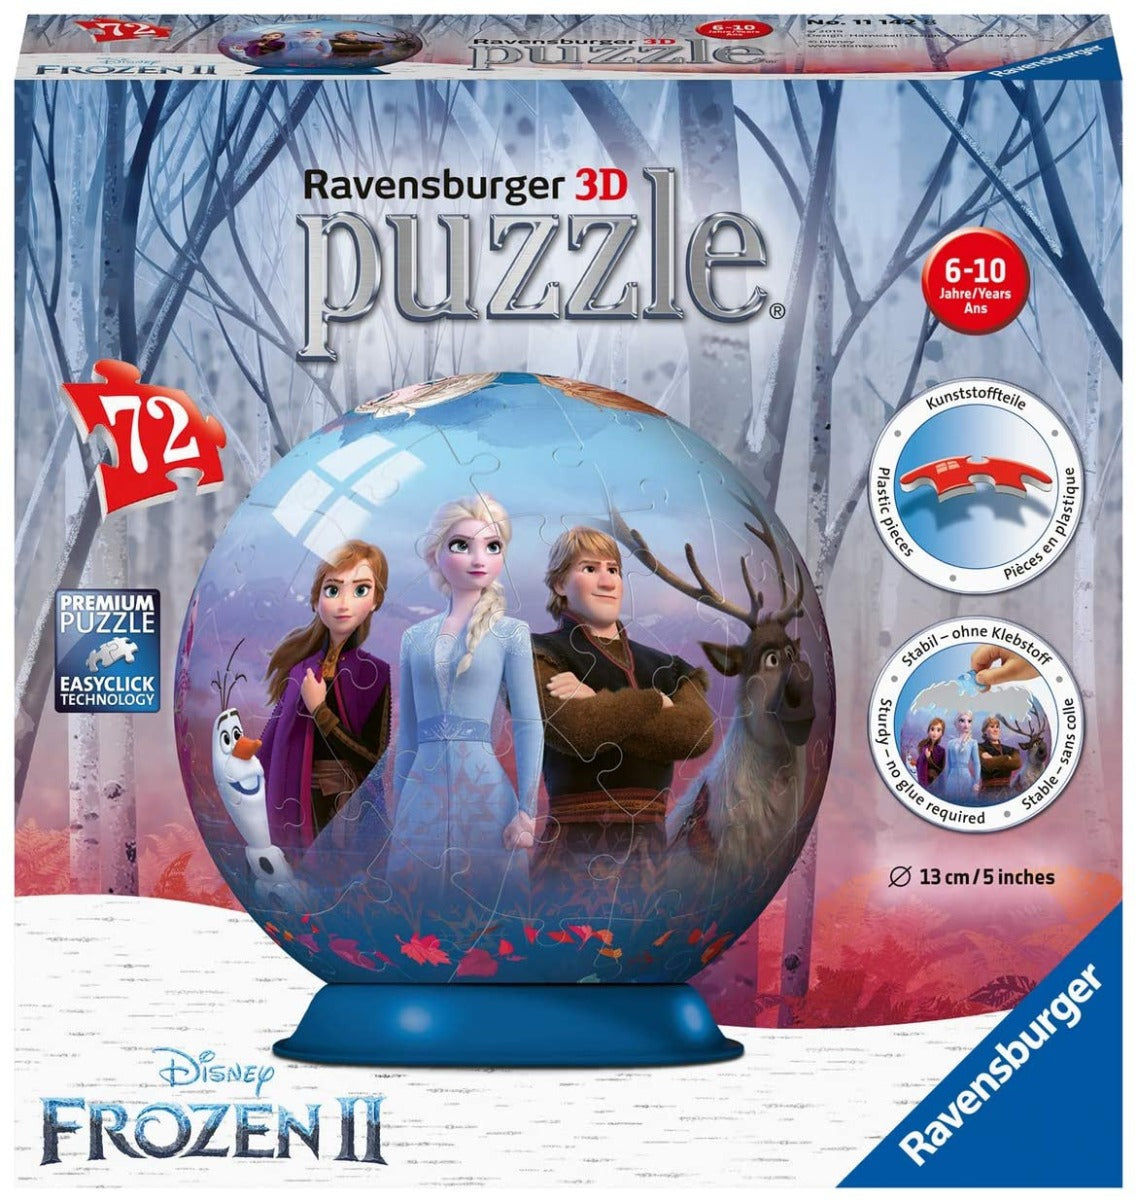 Ravensburger 11142 Disney Frozen 2 - 72 Piece 3D Jigsaw Puzzle Ball